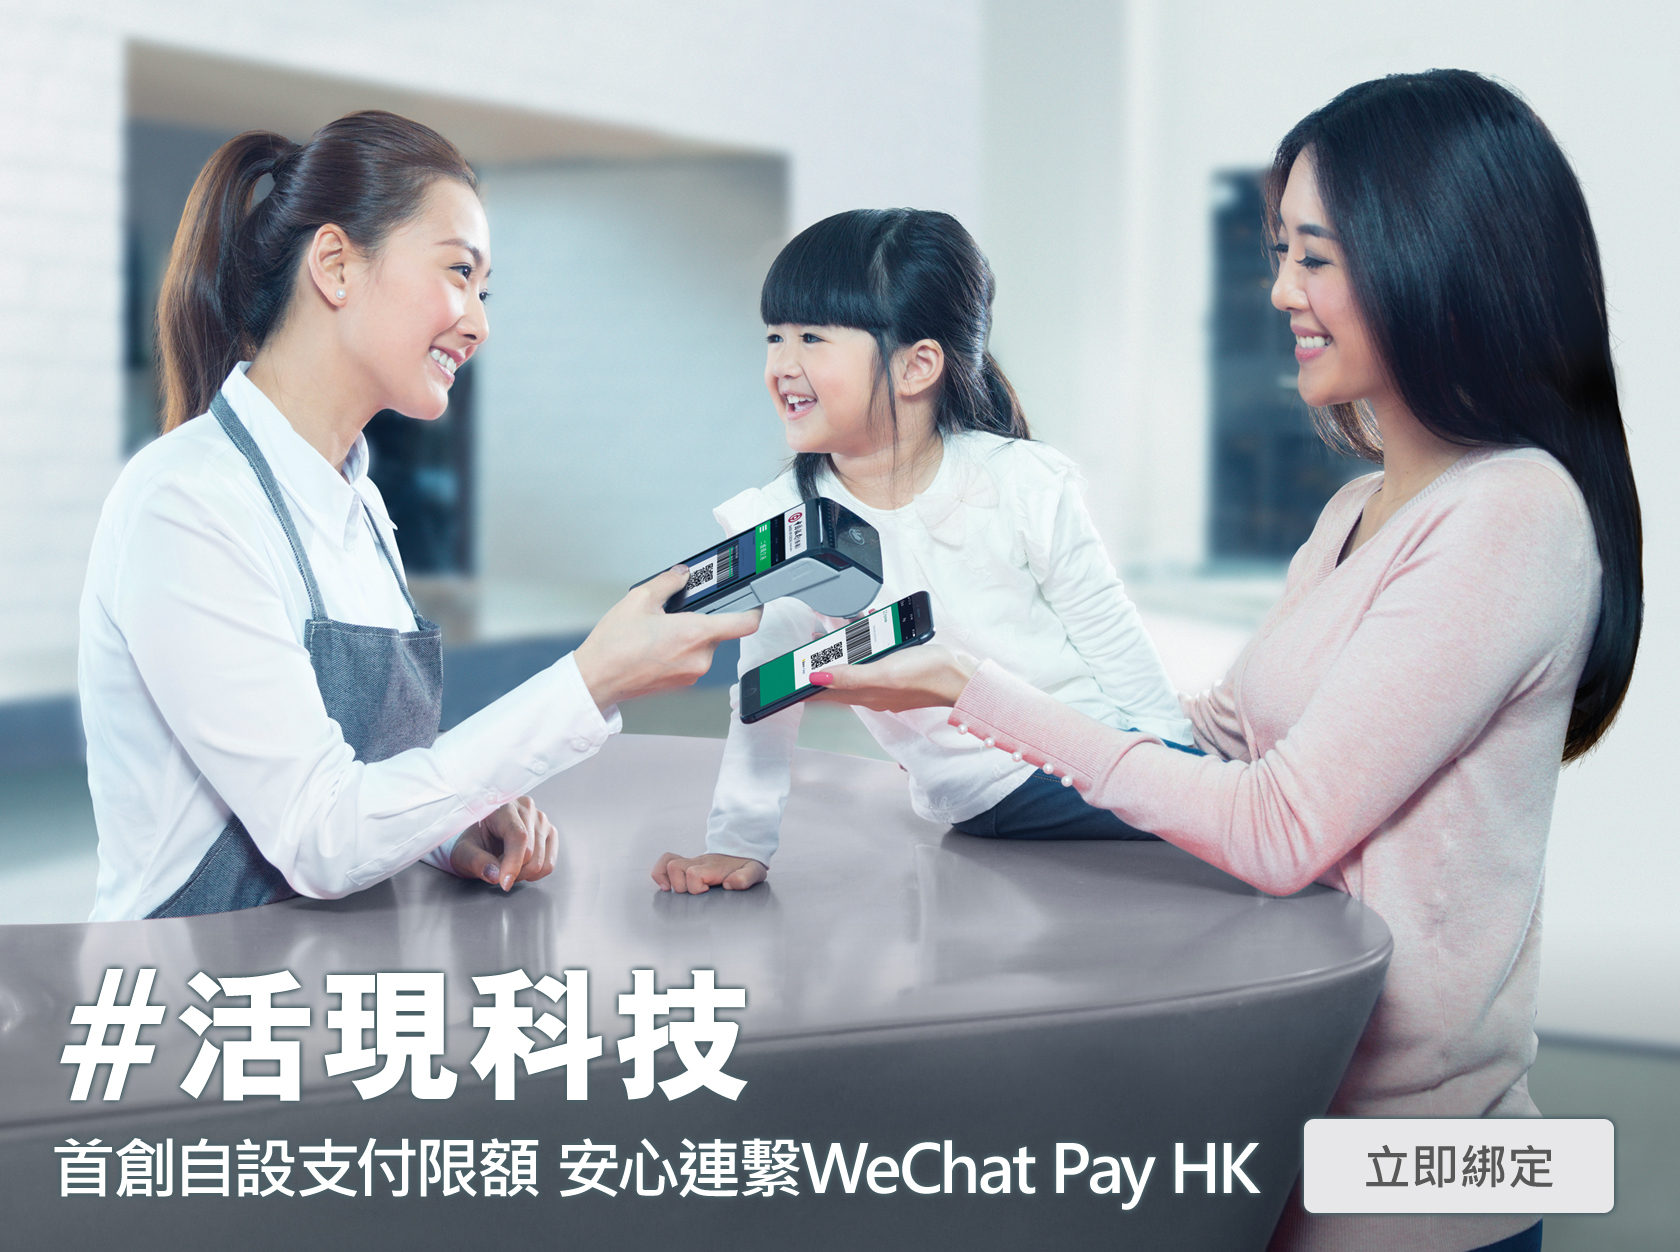 活現科技 - 首創自設支付限額 安心連繫WeChat Pay HK